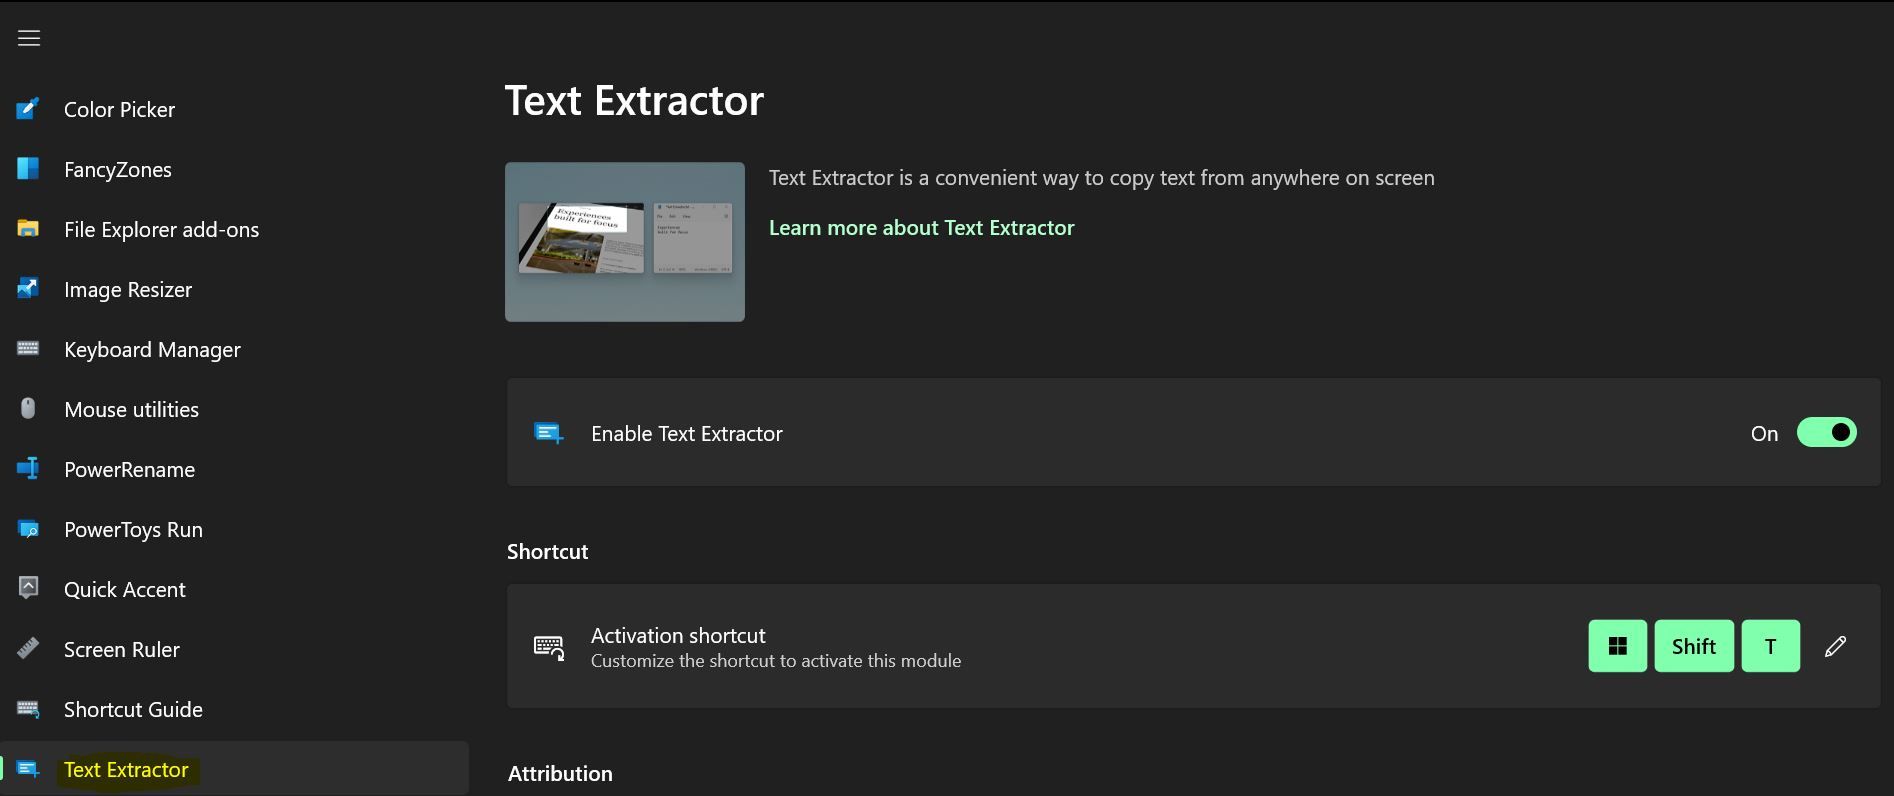 PowerToys text extractor shortcut